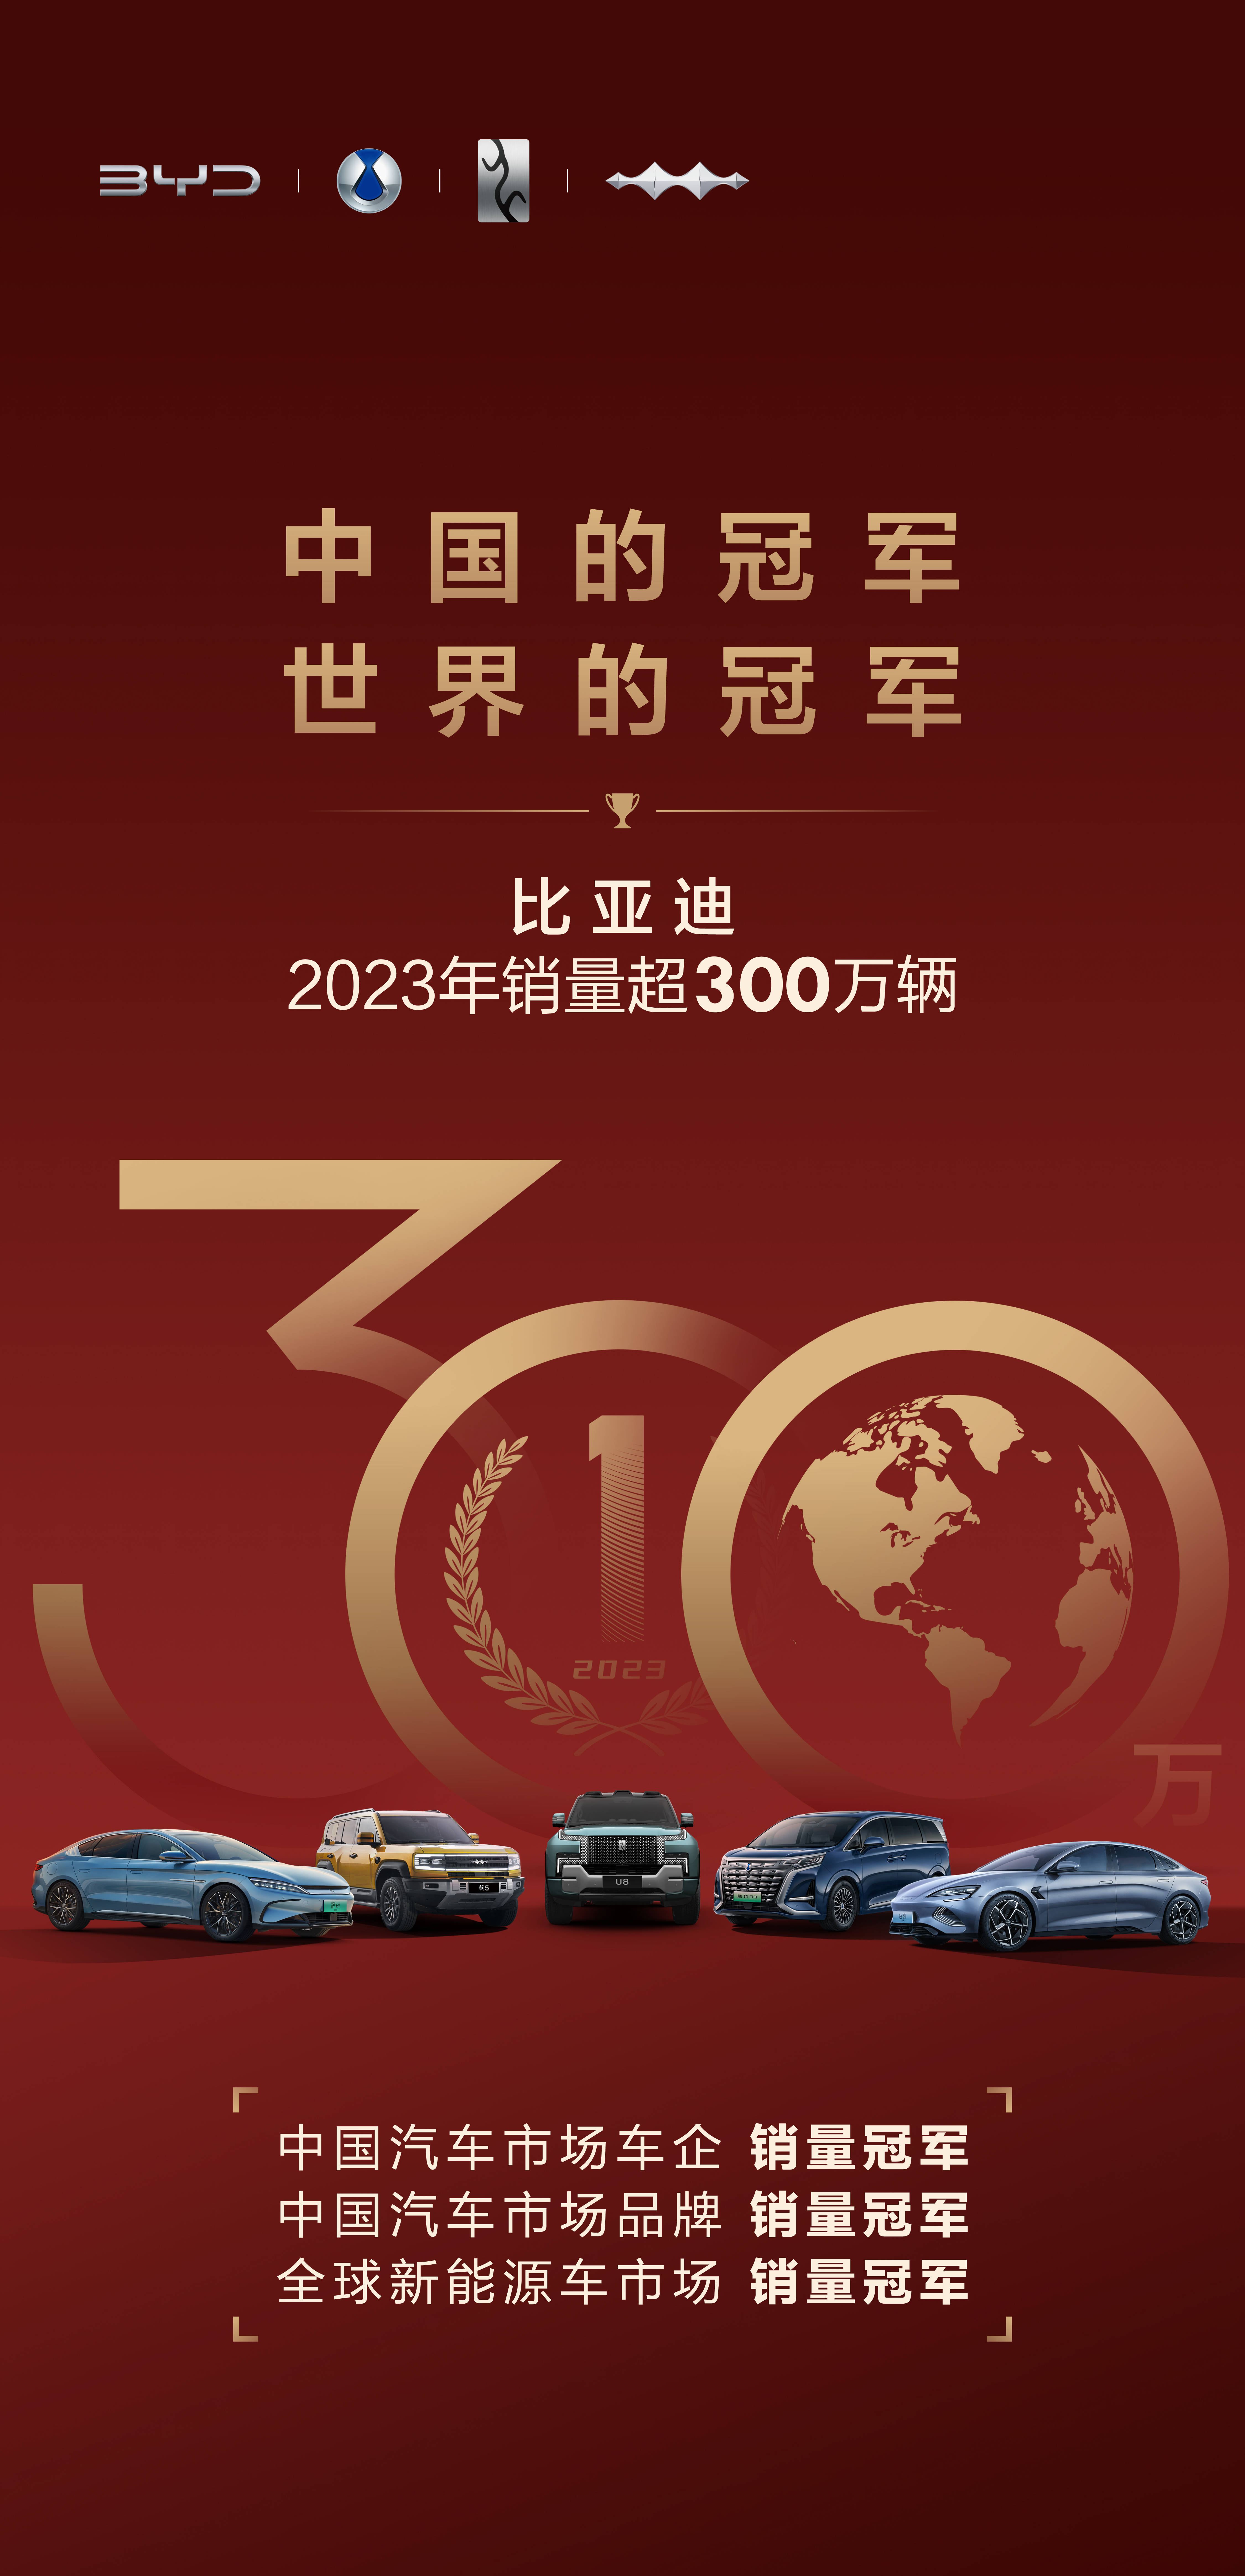 中国新能源汽车持续跑出发展加速度,比亚迪迎来向上突破